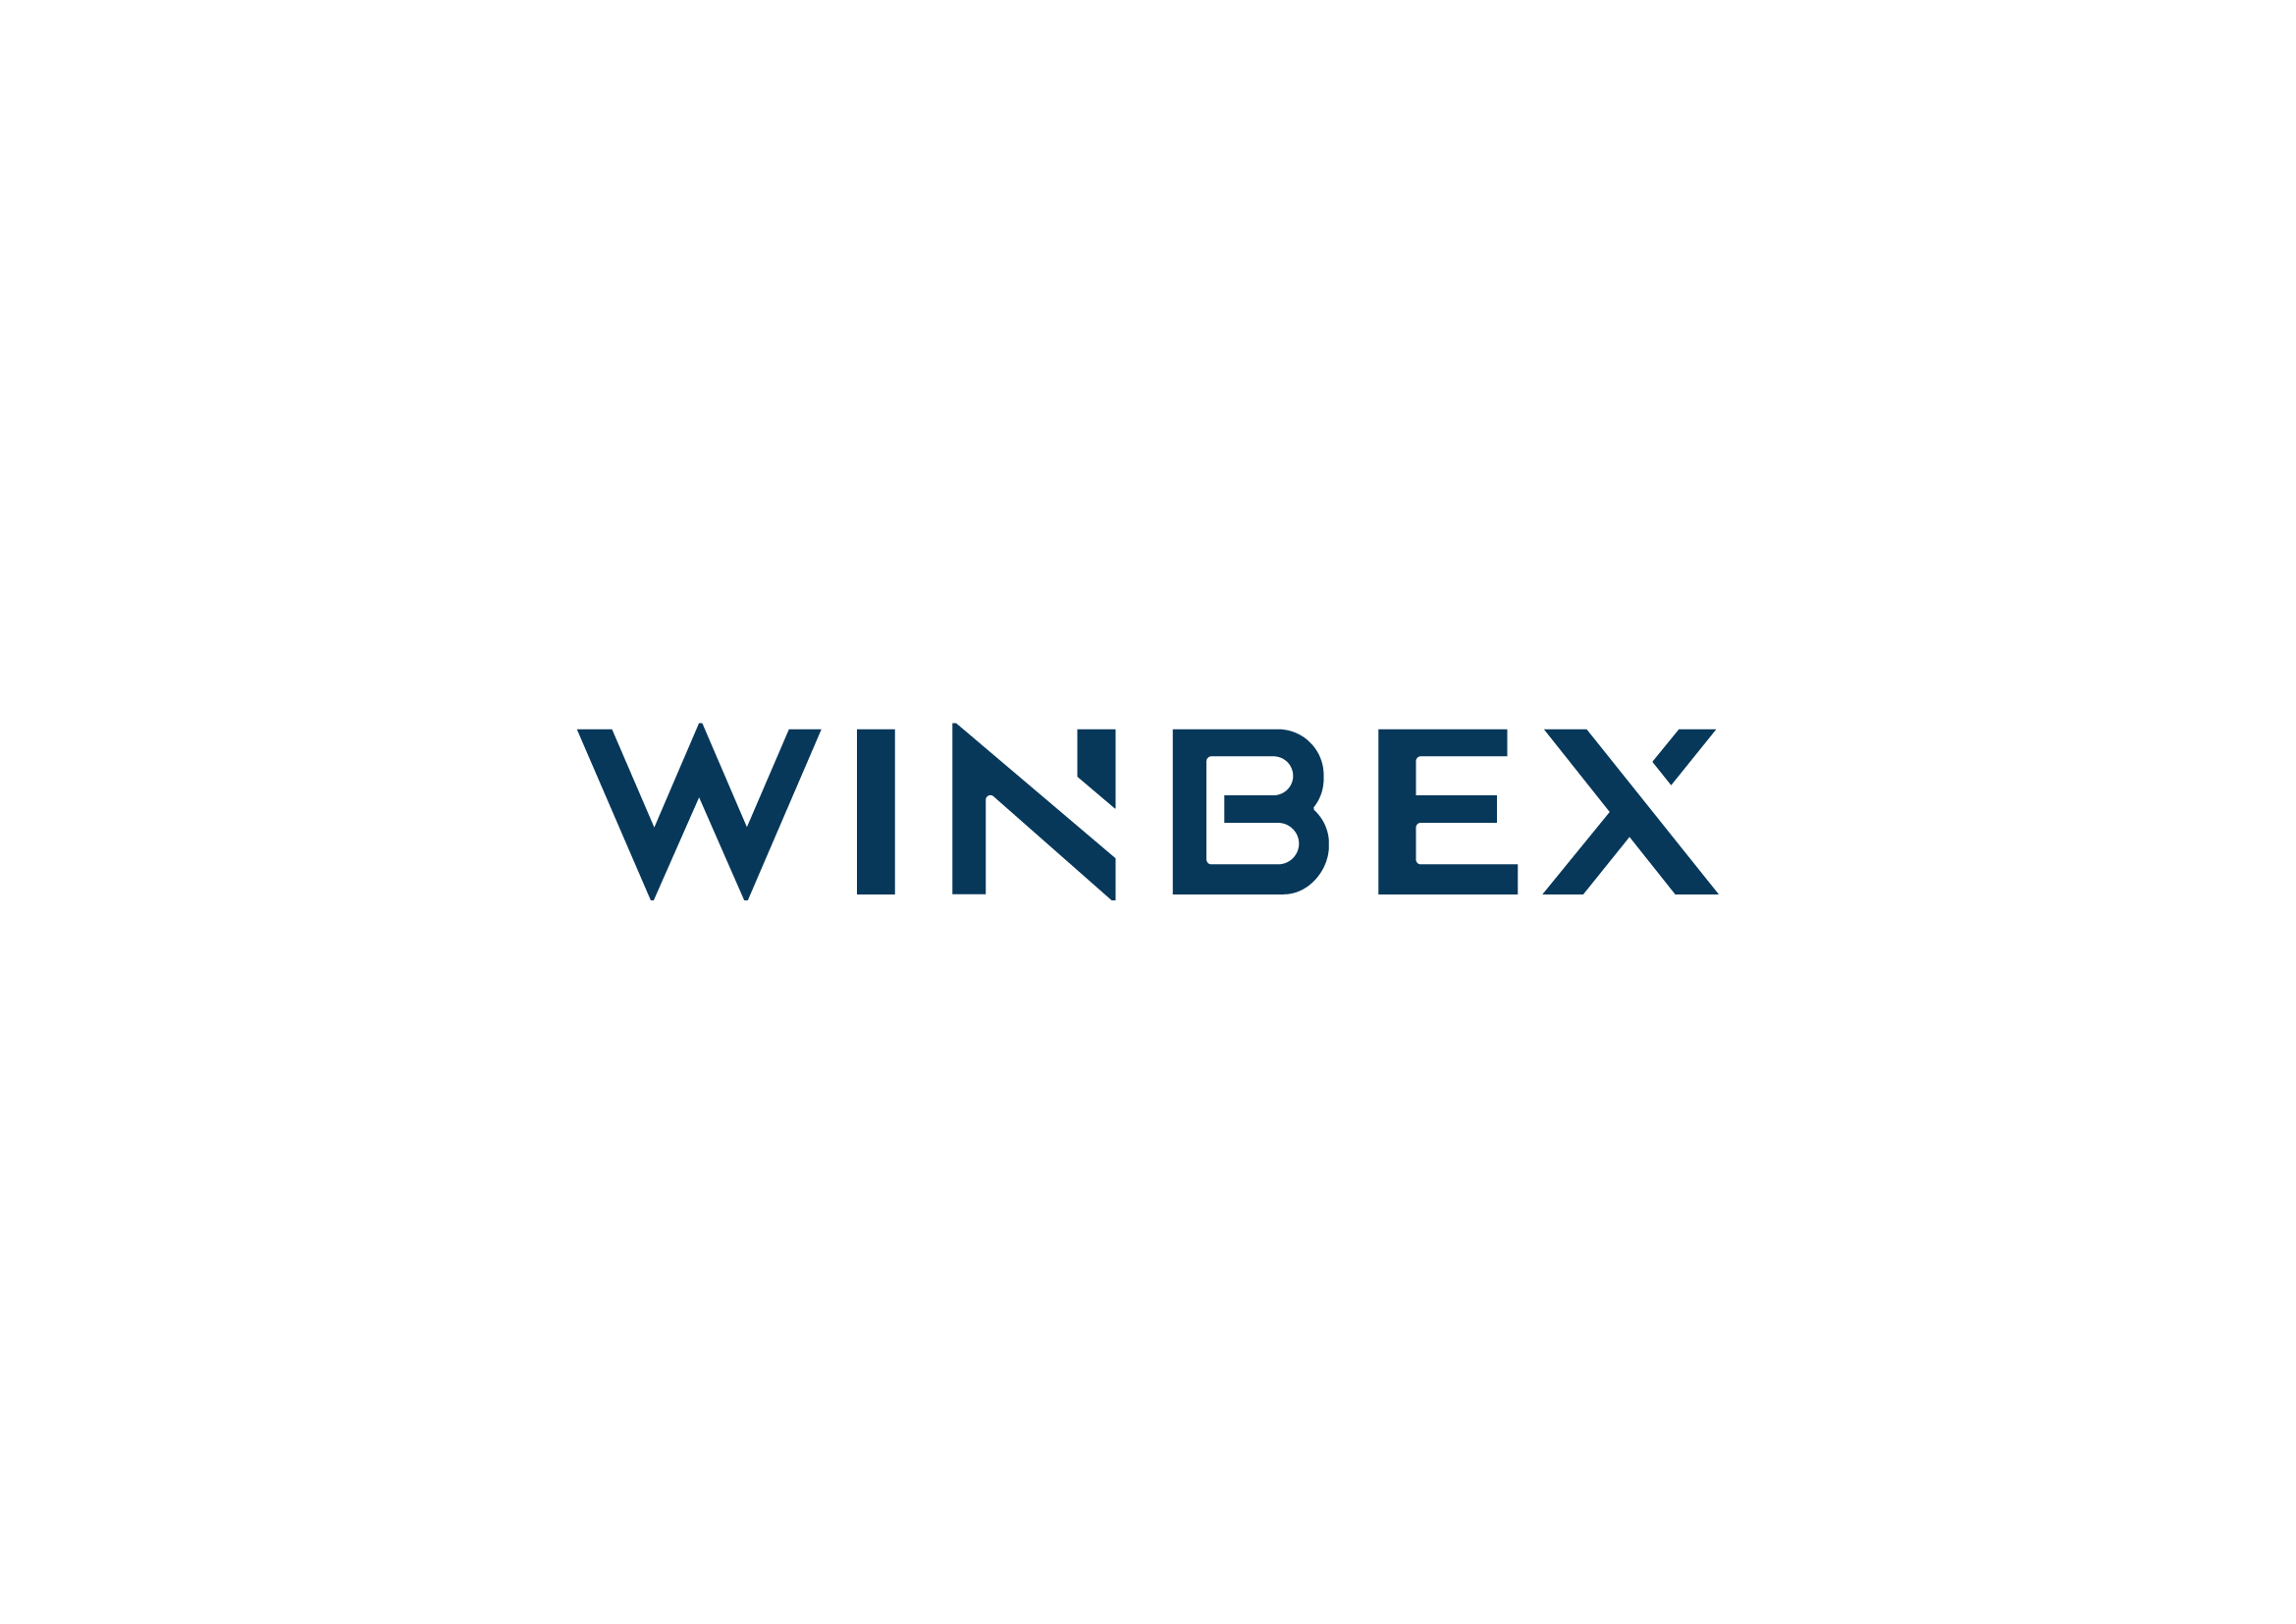 WINBEX LOGO-白底藍字.jpg